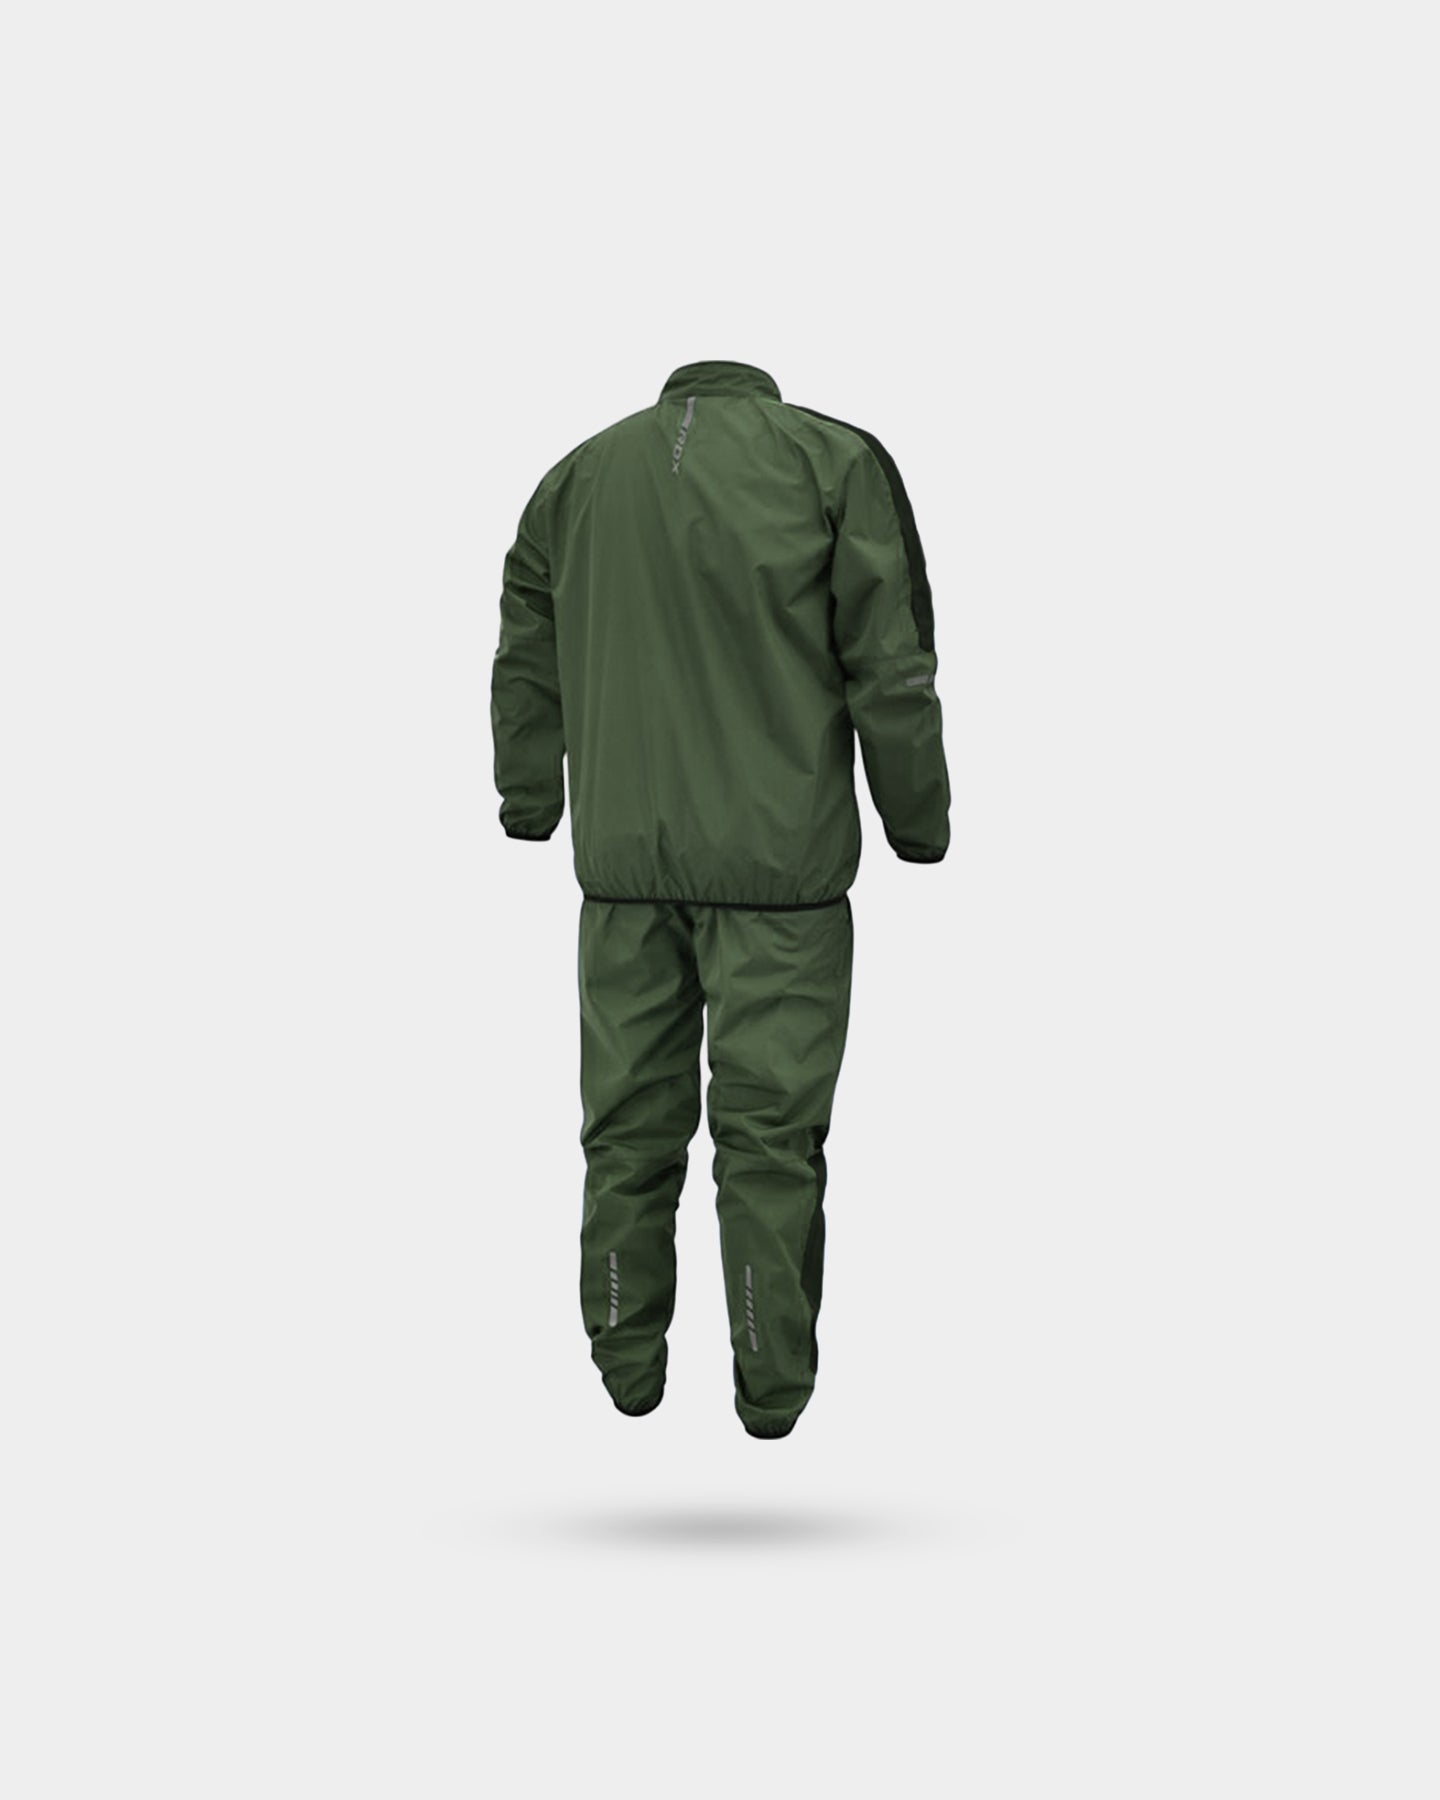 RDX Sports Sauna Suit C1, L, Army Green A2